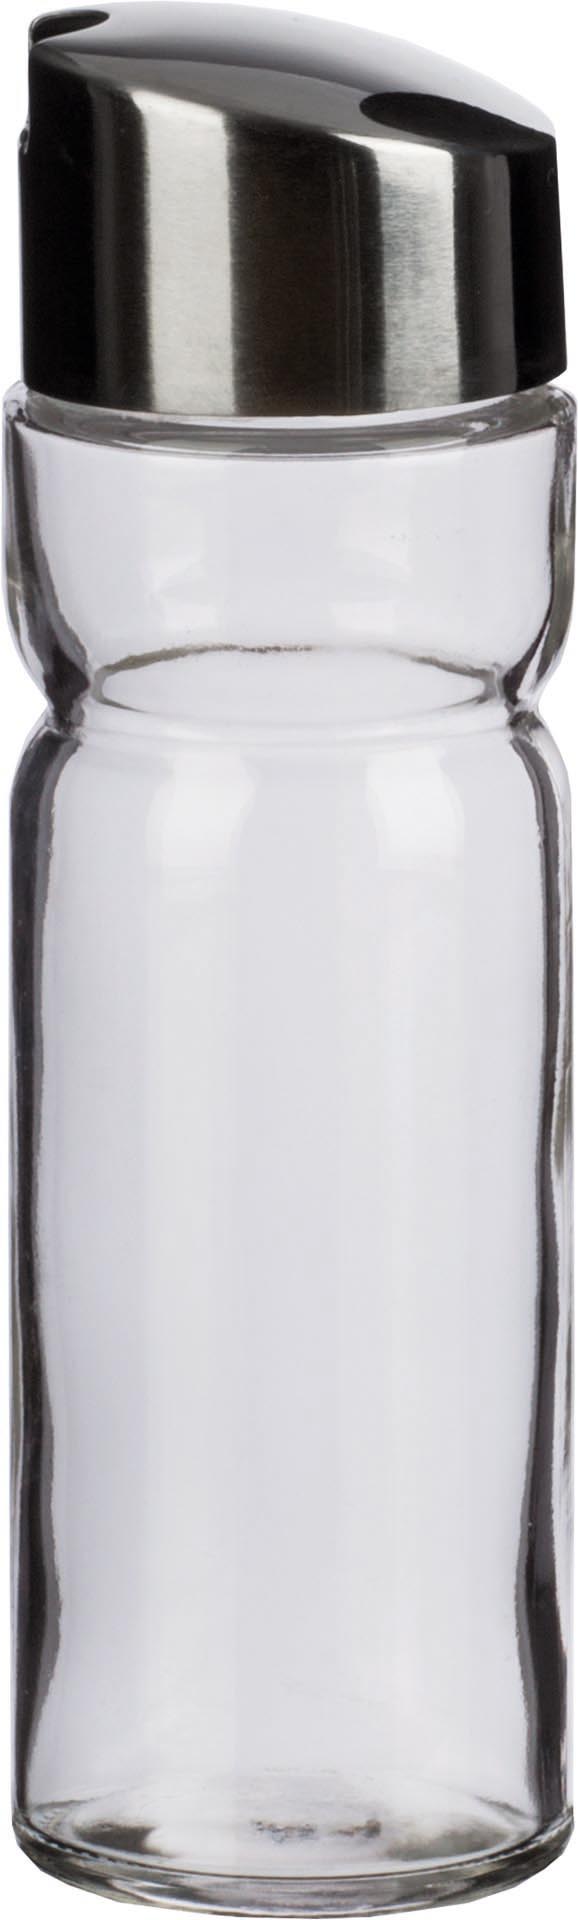 Essig-I-Ersatzglas mit Deckel